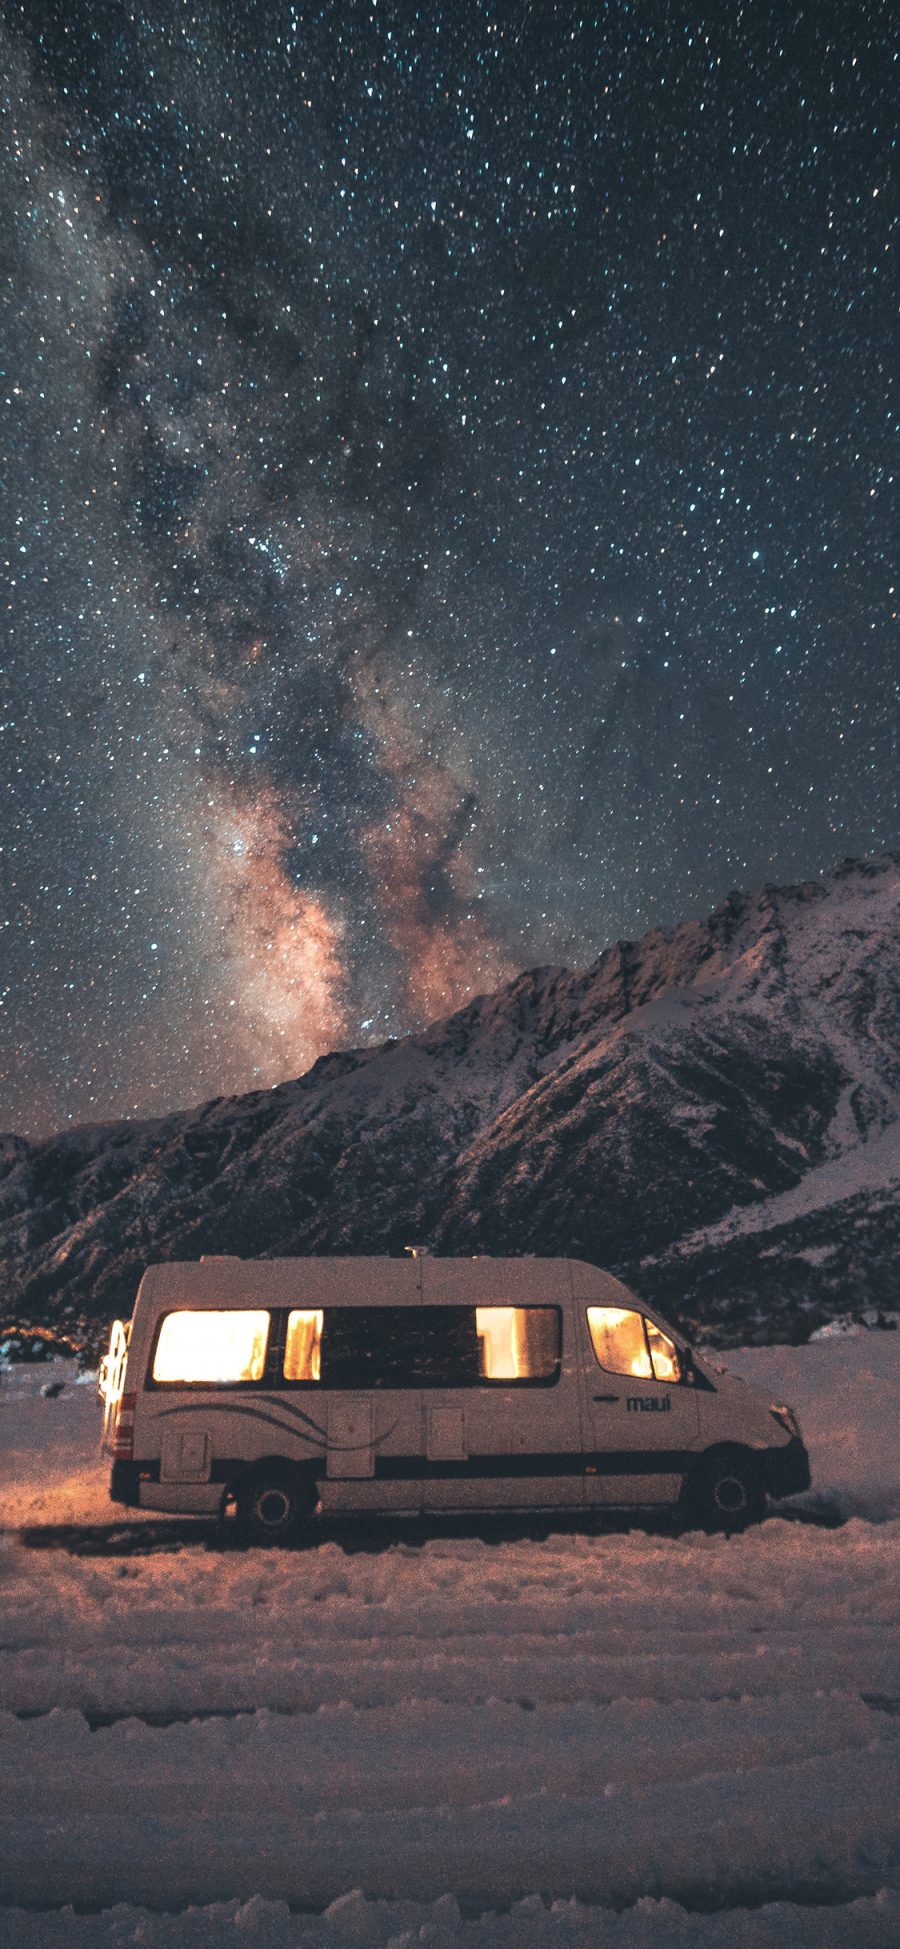 [2436×1125]雪地 星空 夜景 房车 苹果手机壁纸图片